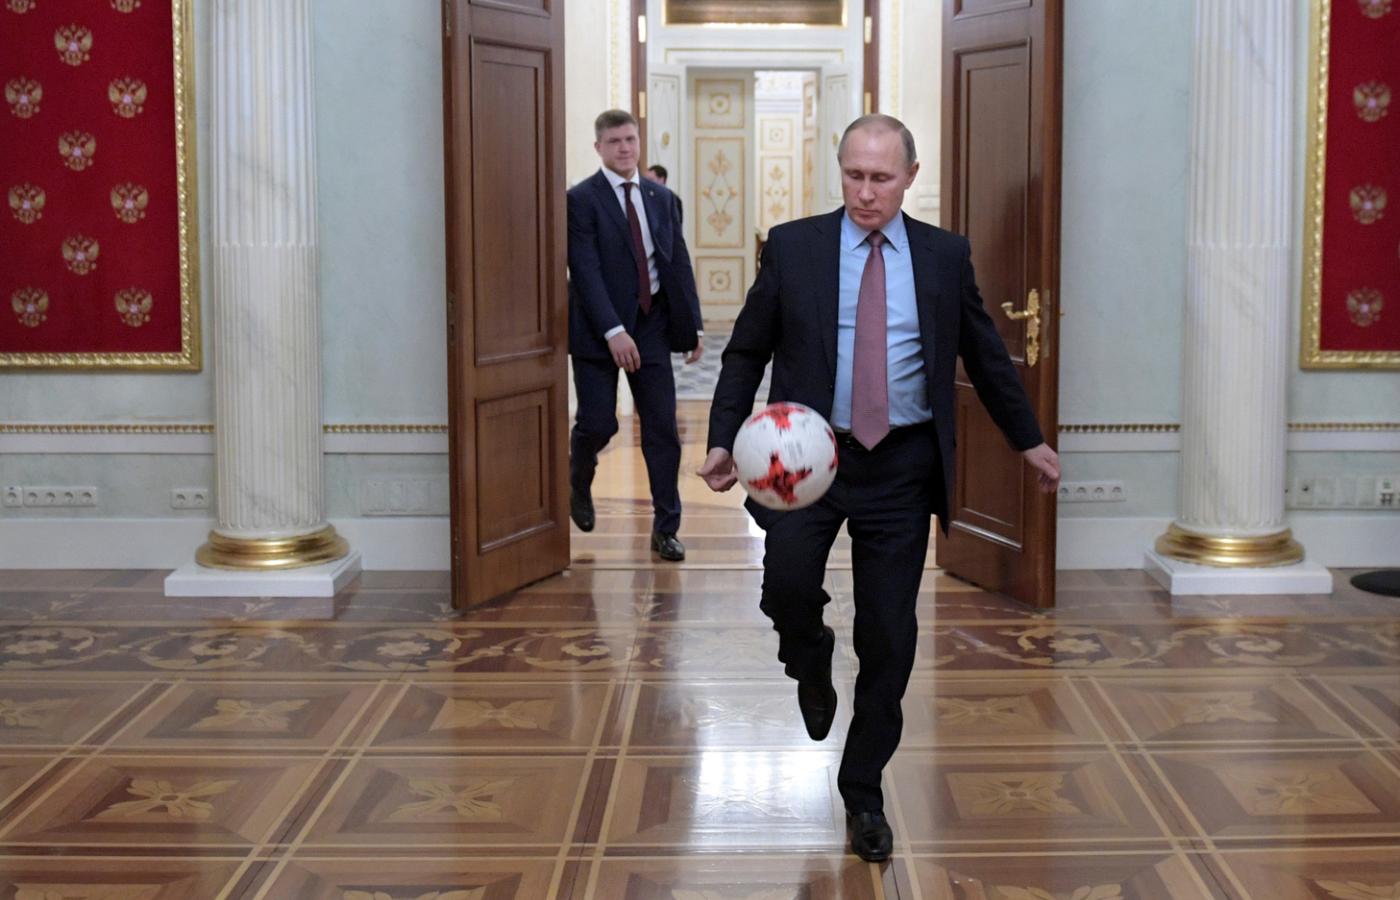 Putin to jednoosobowa reprezentacja Rosji: w polityce, ale i w sporcie.